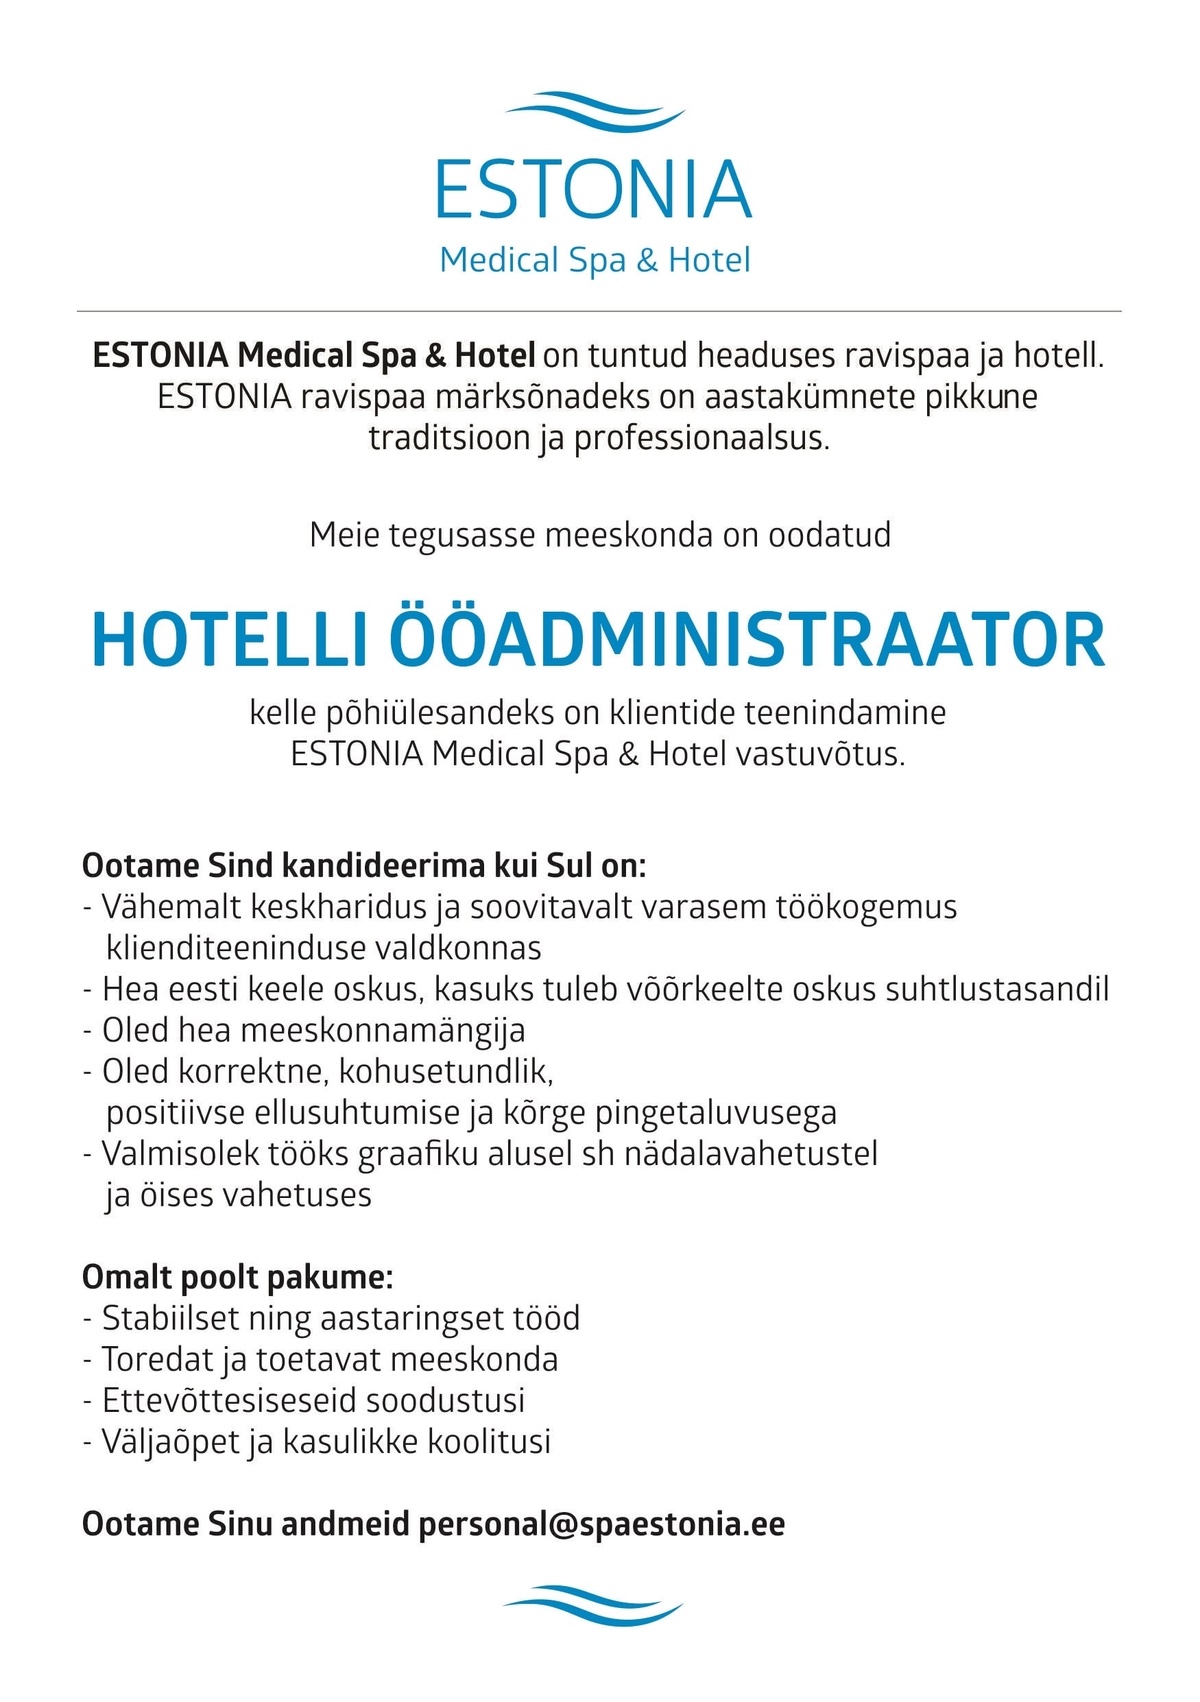 Estonia Spa Hotels AS HOTELLI ÖÖADMINISTRAATOR